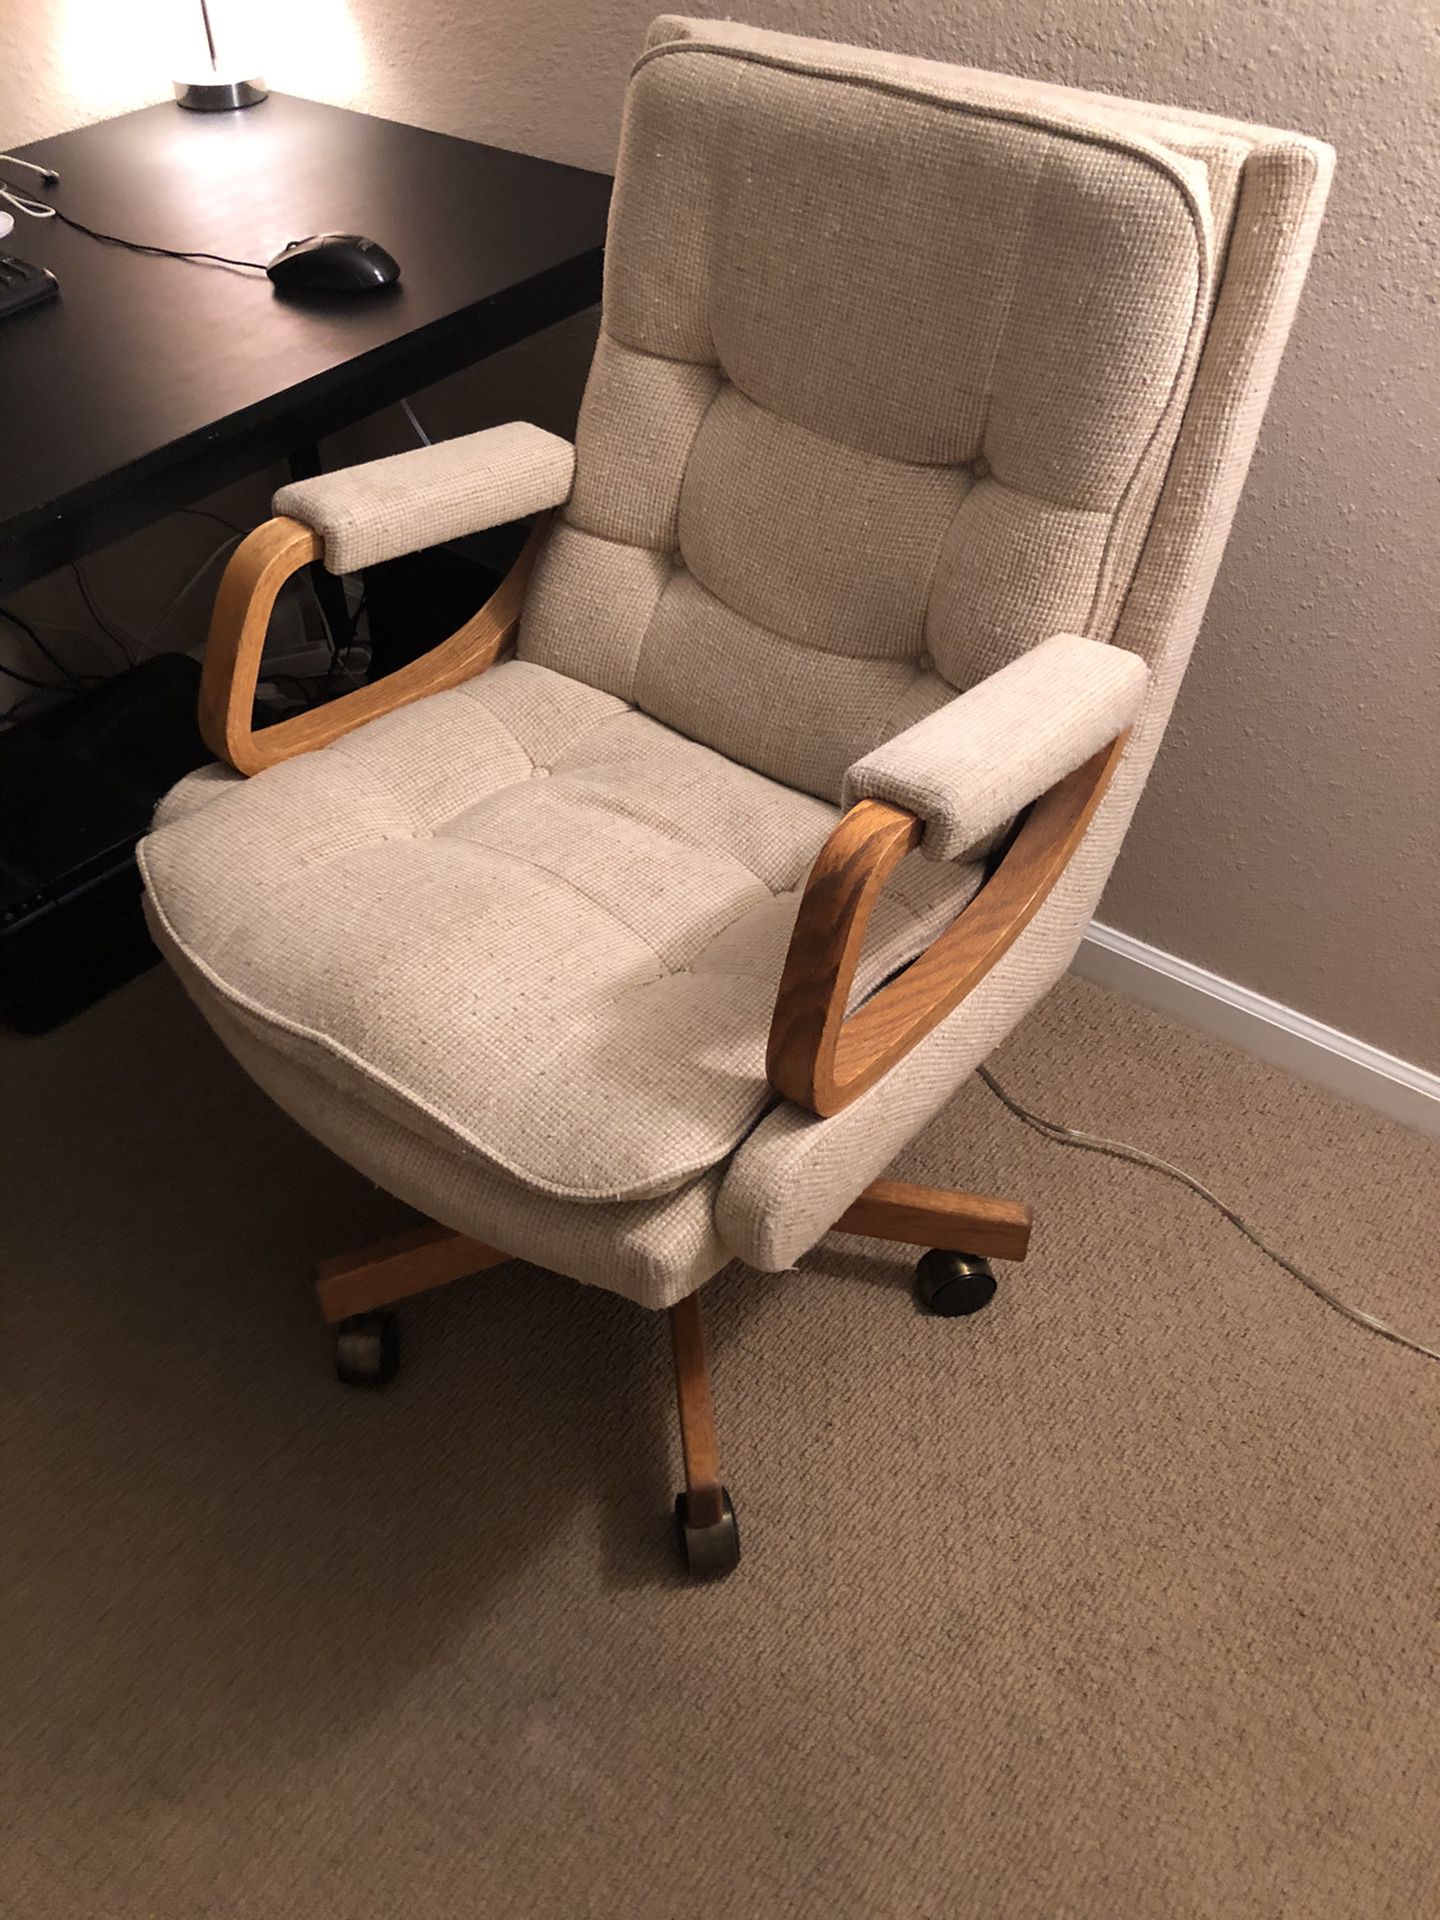 Swivel office chair